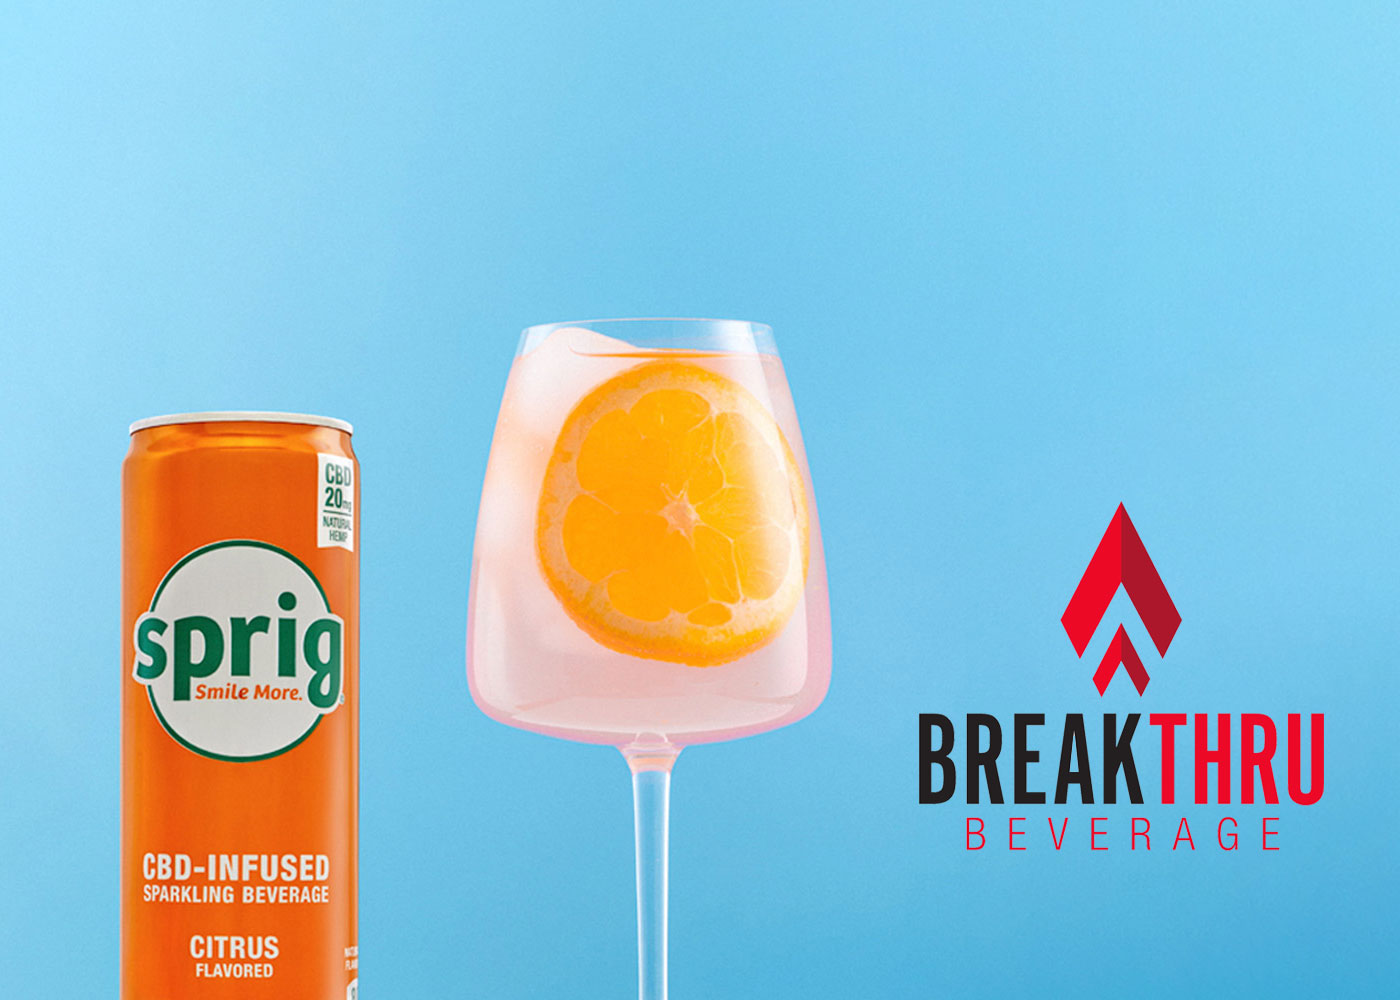 Sprig CBD-Infused Sparkling Beverage Expands Distribution. Partners With Breakthru Beverage Group.